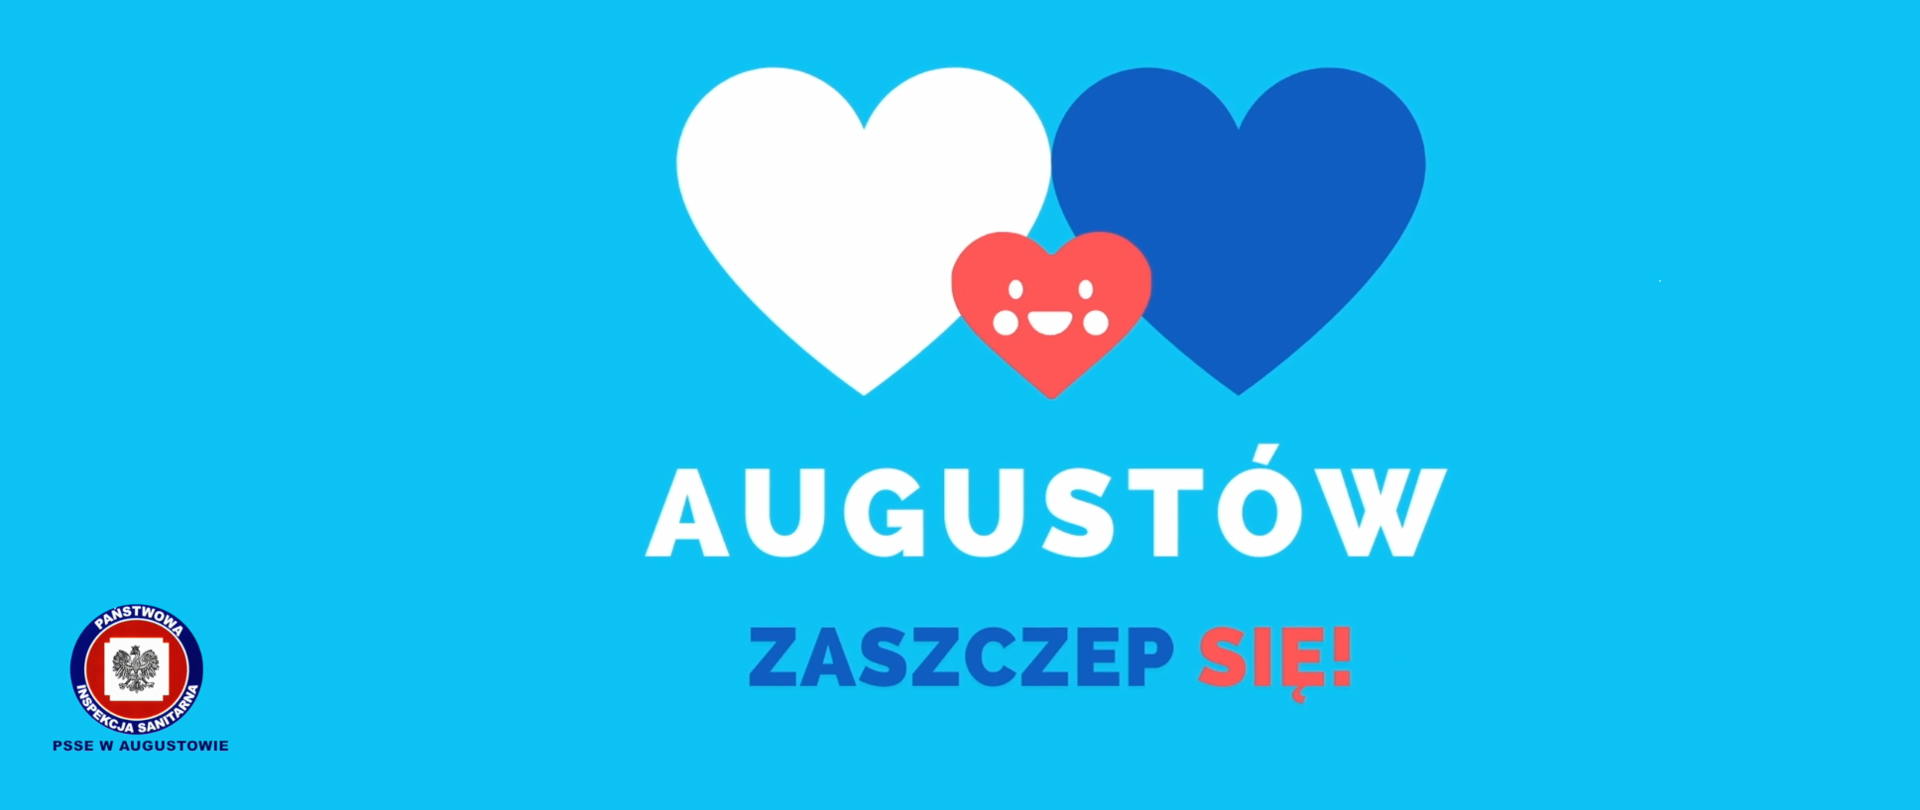 Augustów_Zszczep_się